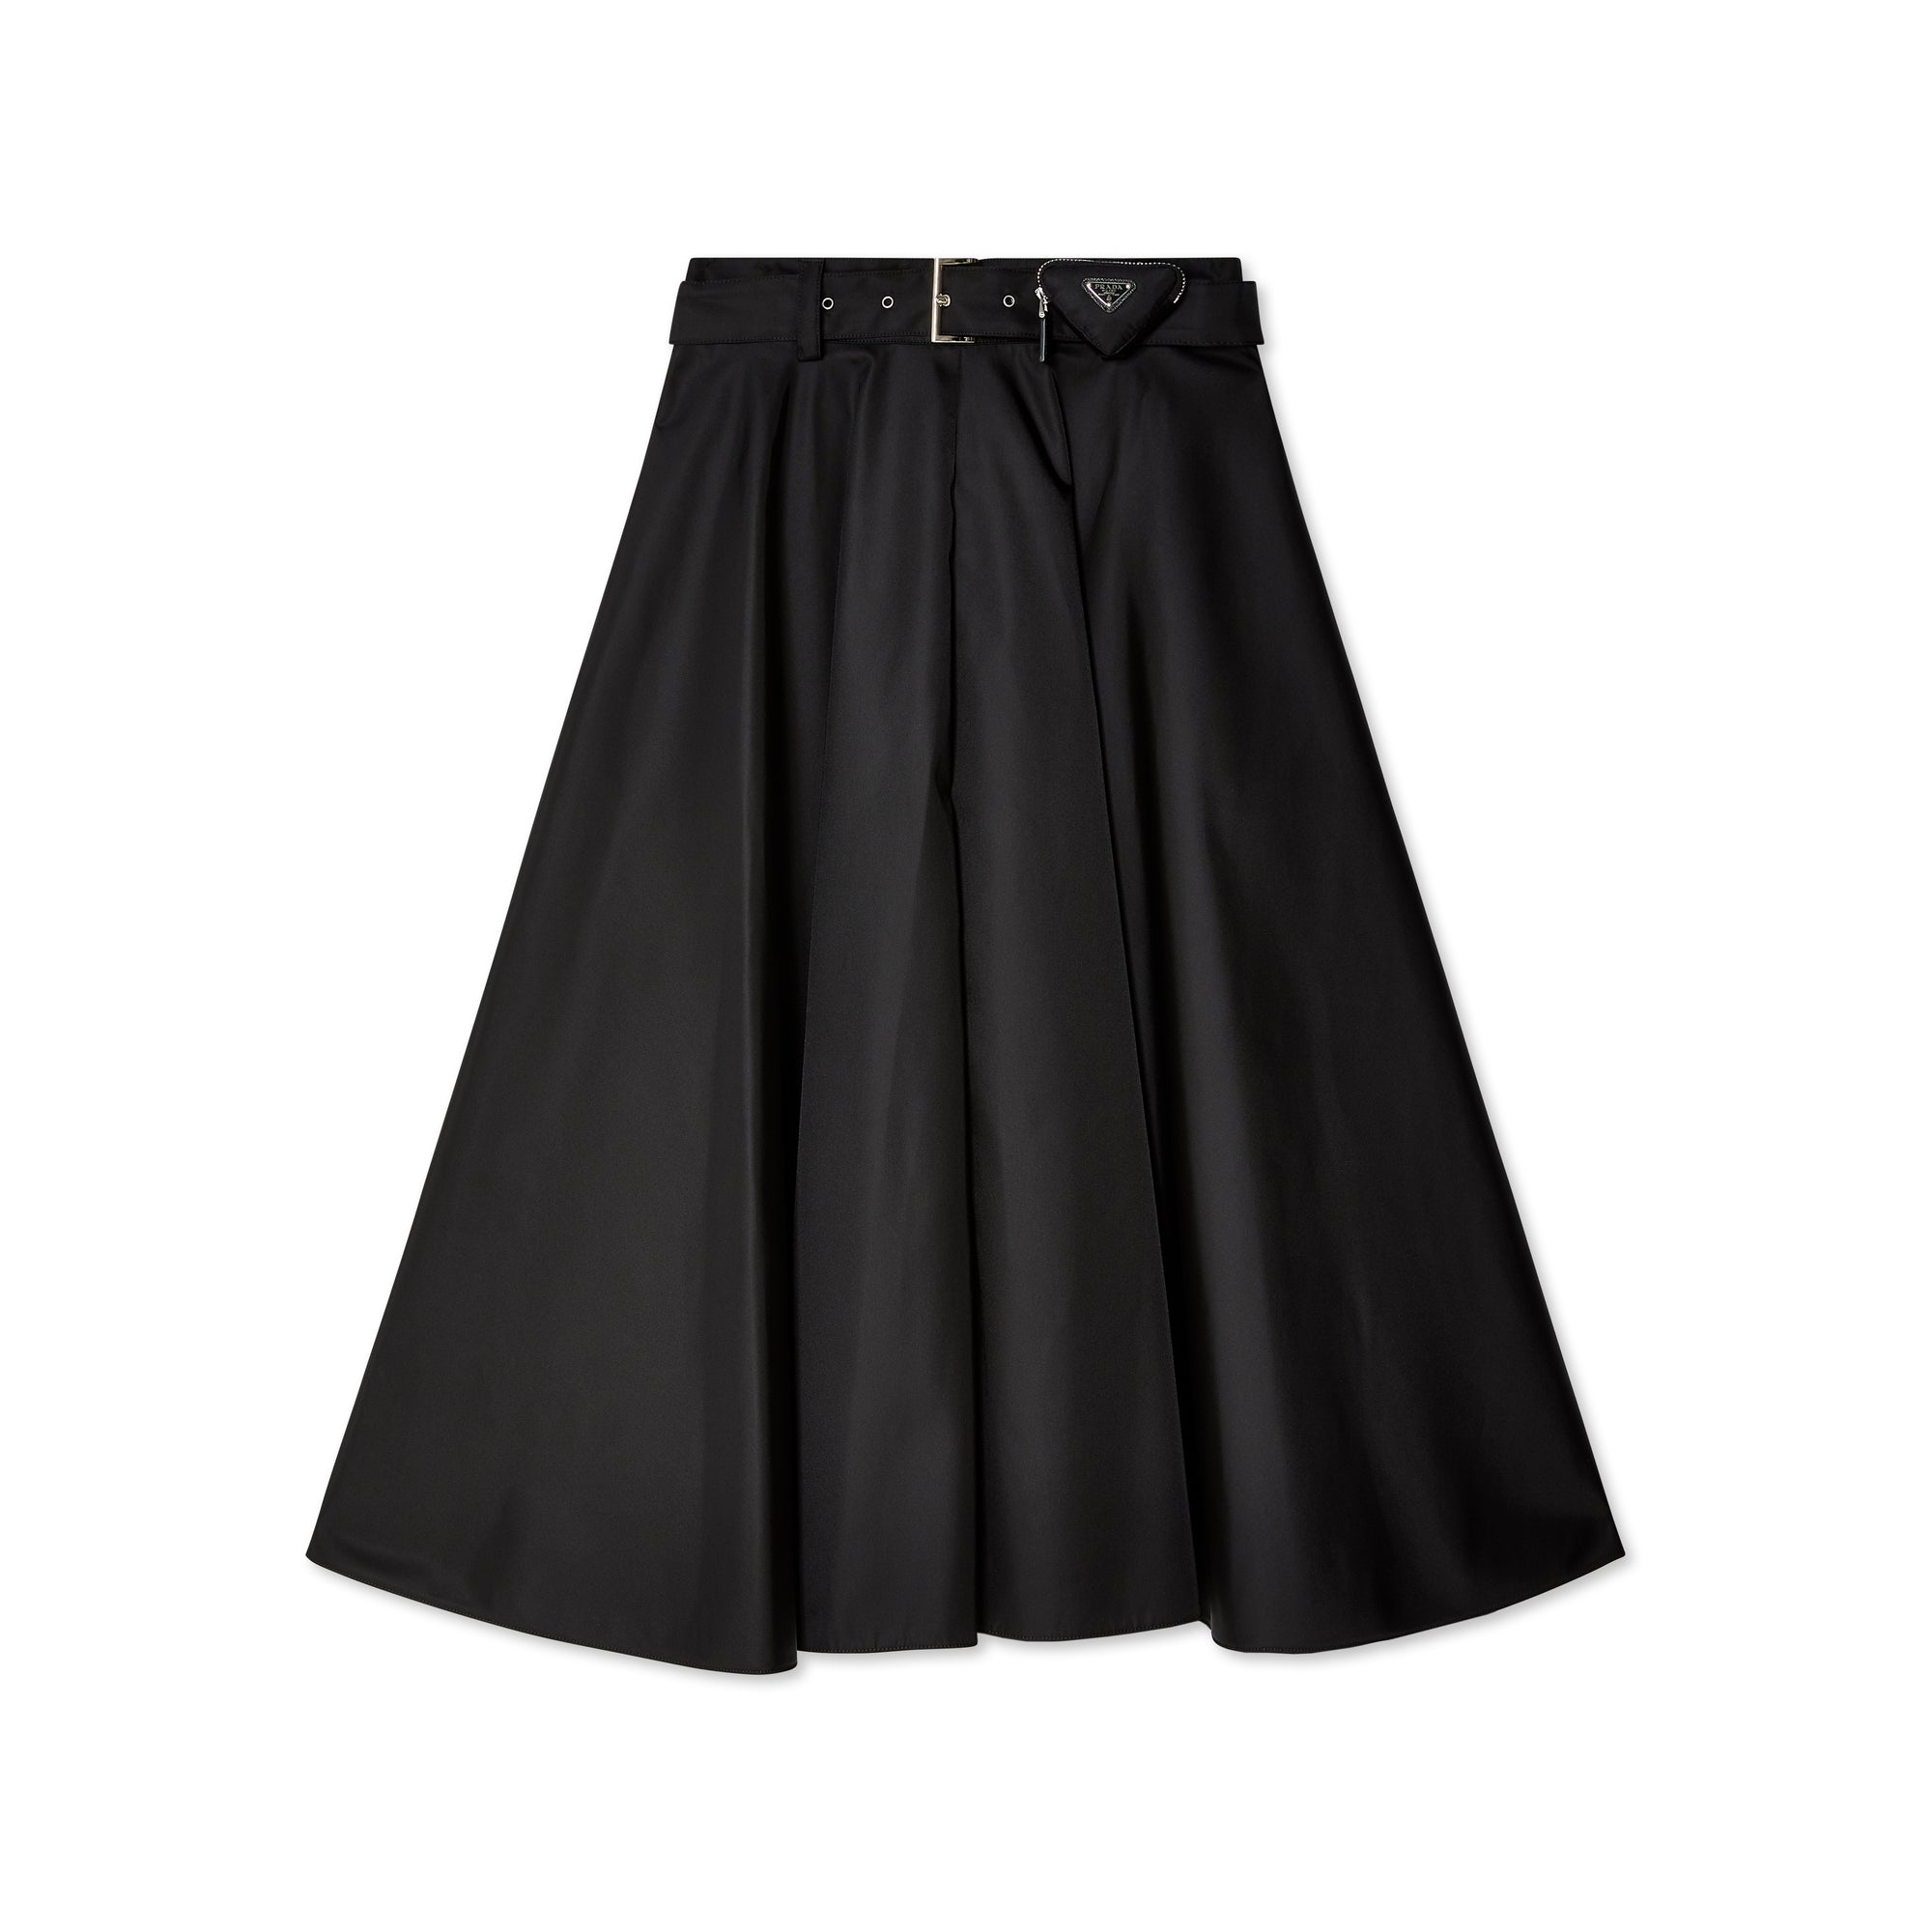 Prada - Women's Skirt - (Black) view 1